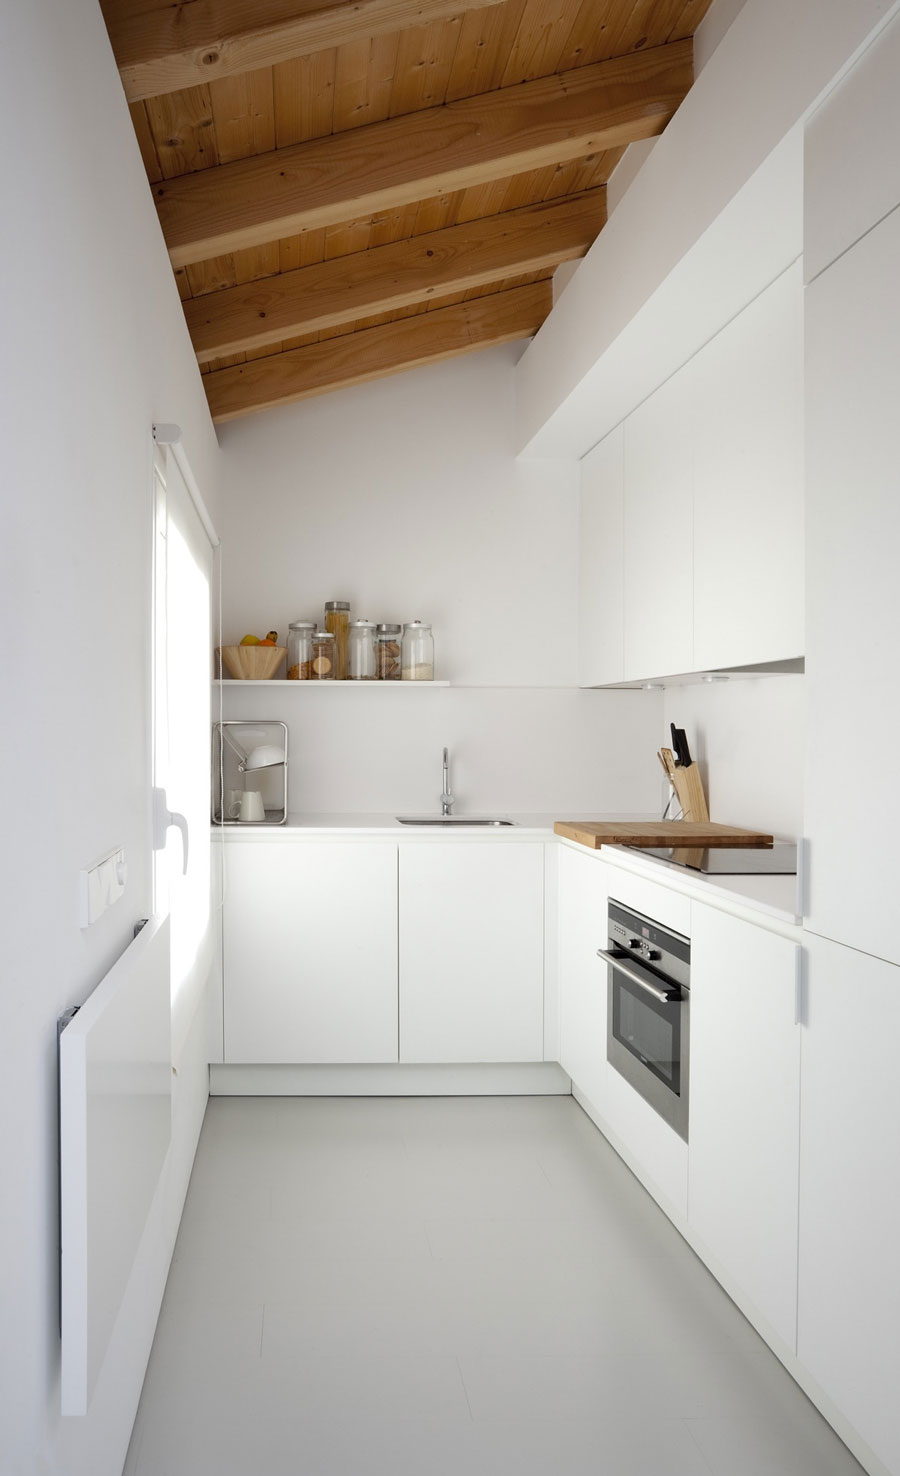 Mẫu 3: Tủ bếp chữ L phù hợp nhiều không gian kể cả không gian bếp nhỏ